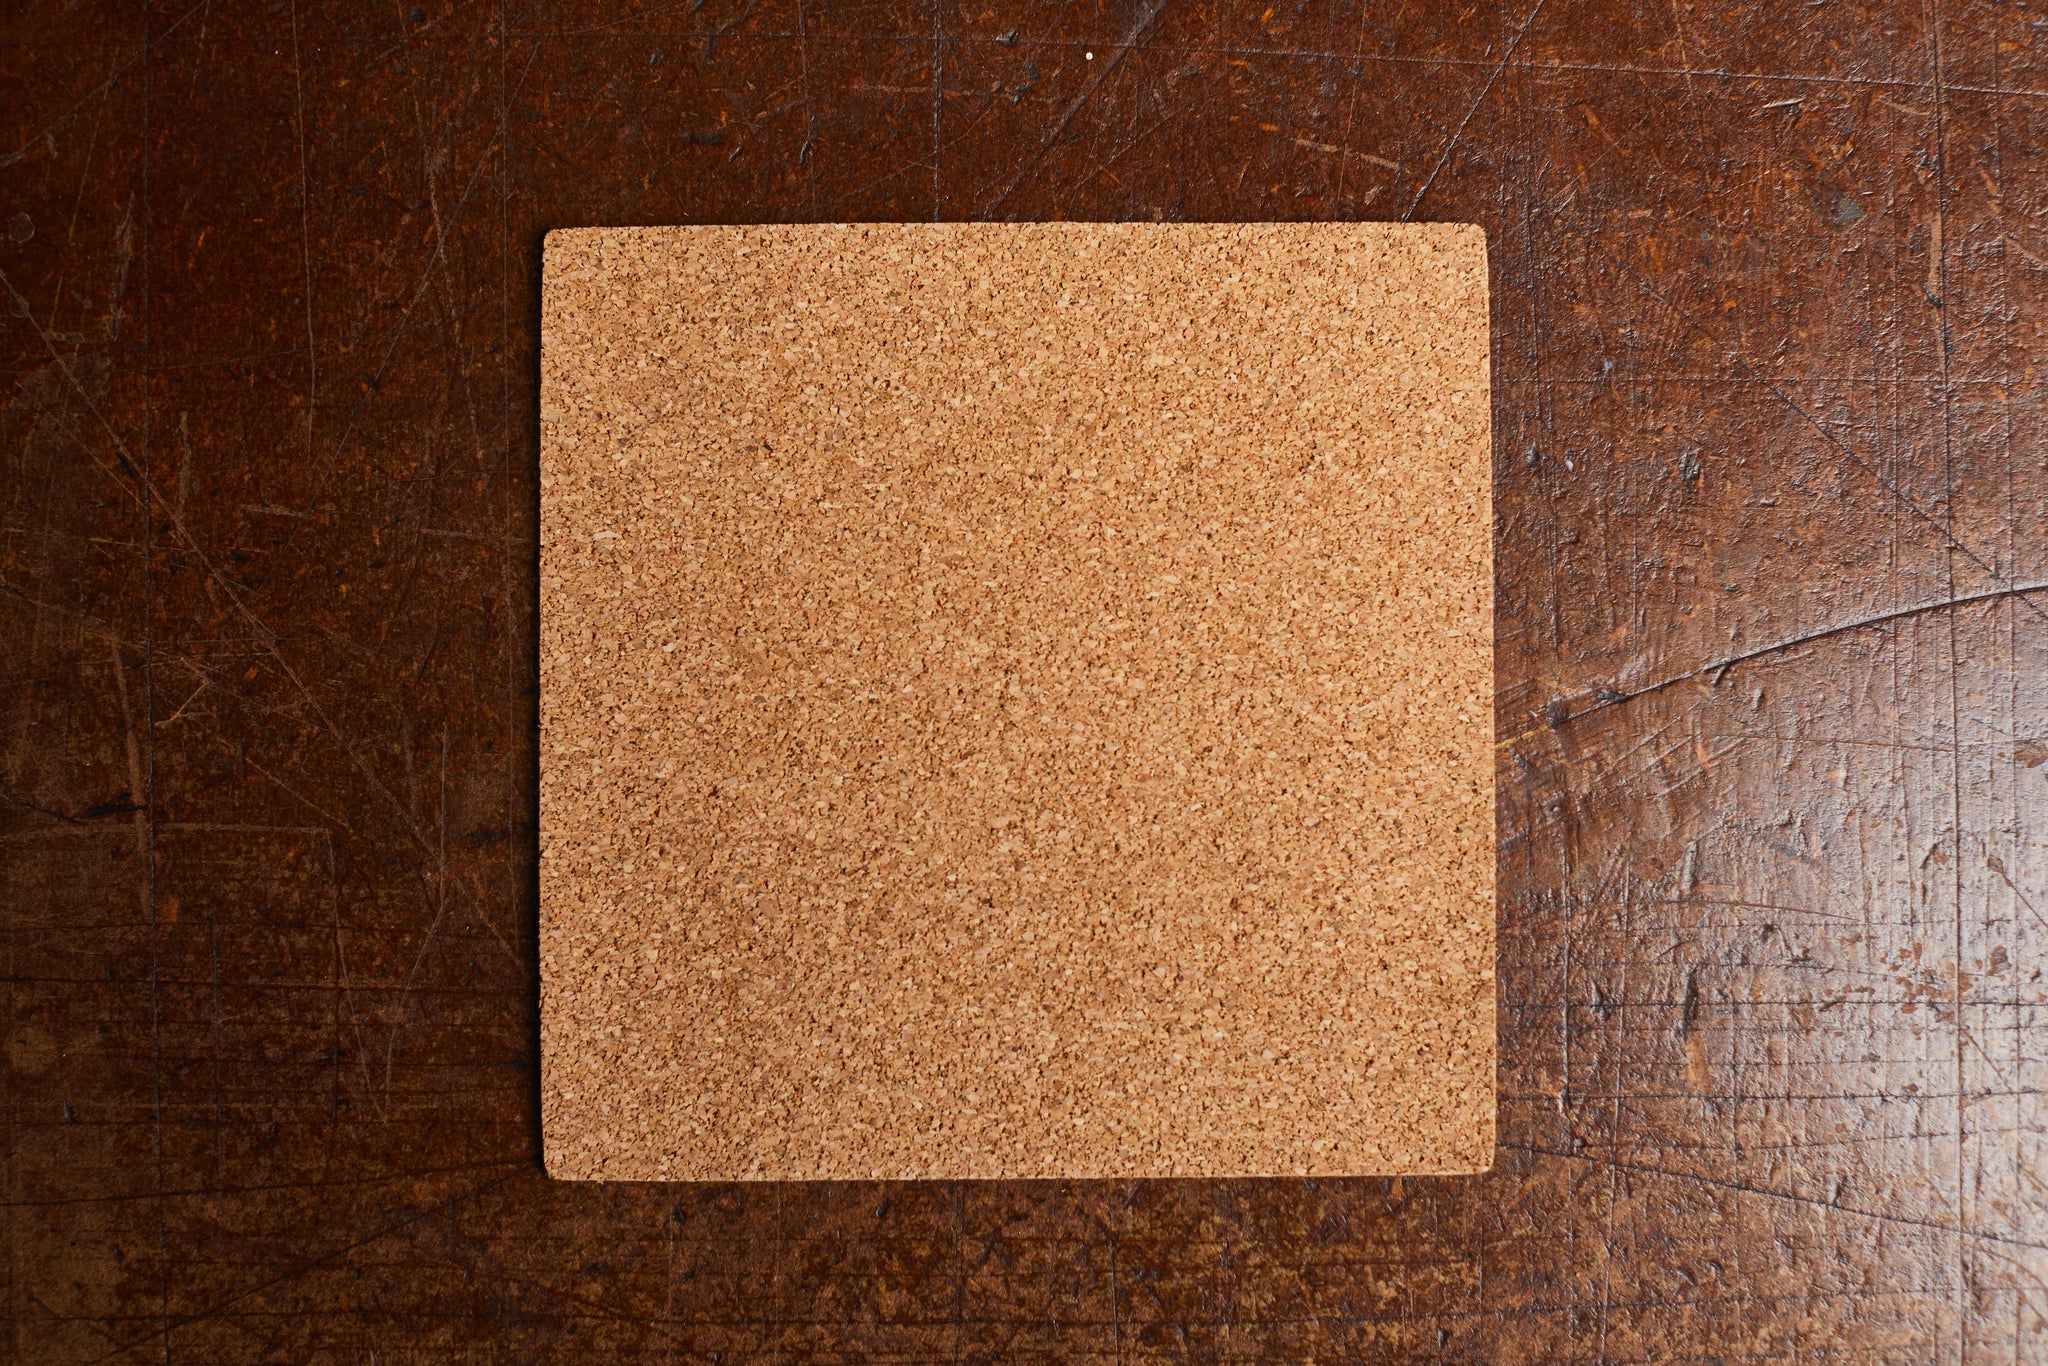  6" x 6" Adhesive Cork Squares (100 piece minimum)